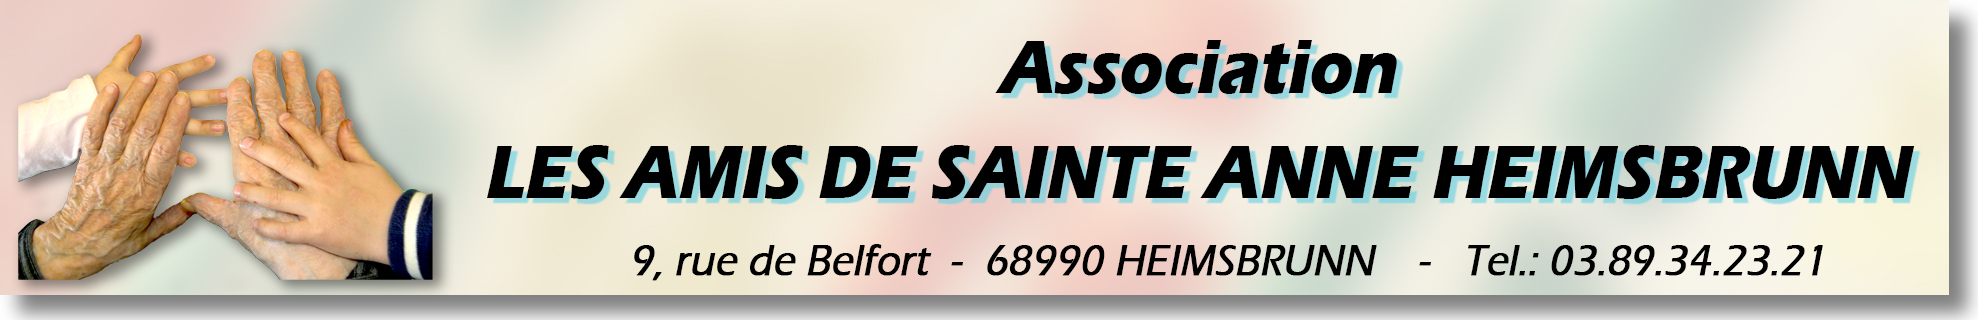 Logo-Amis de Sainte Anne.jpg